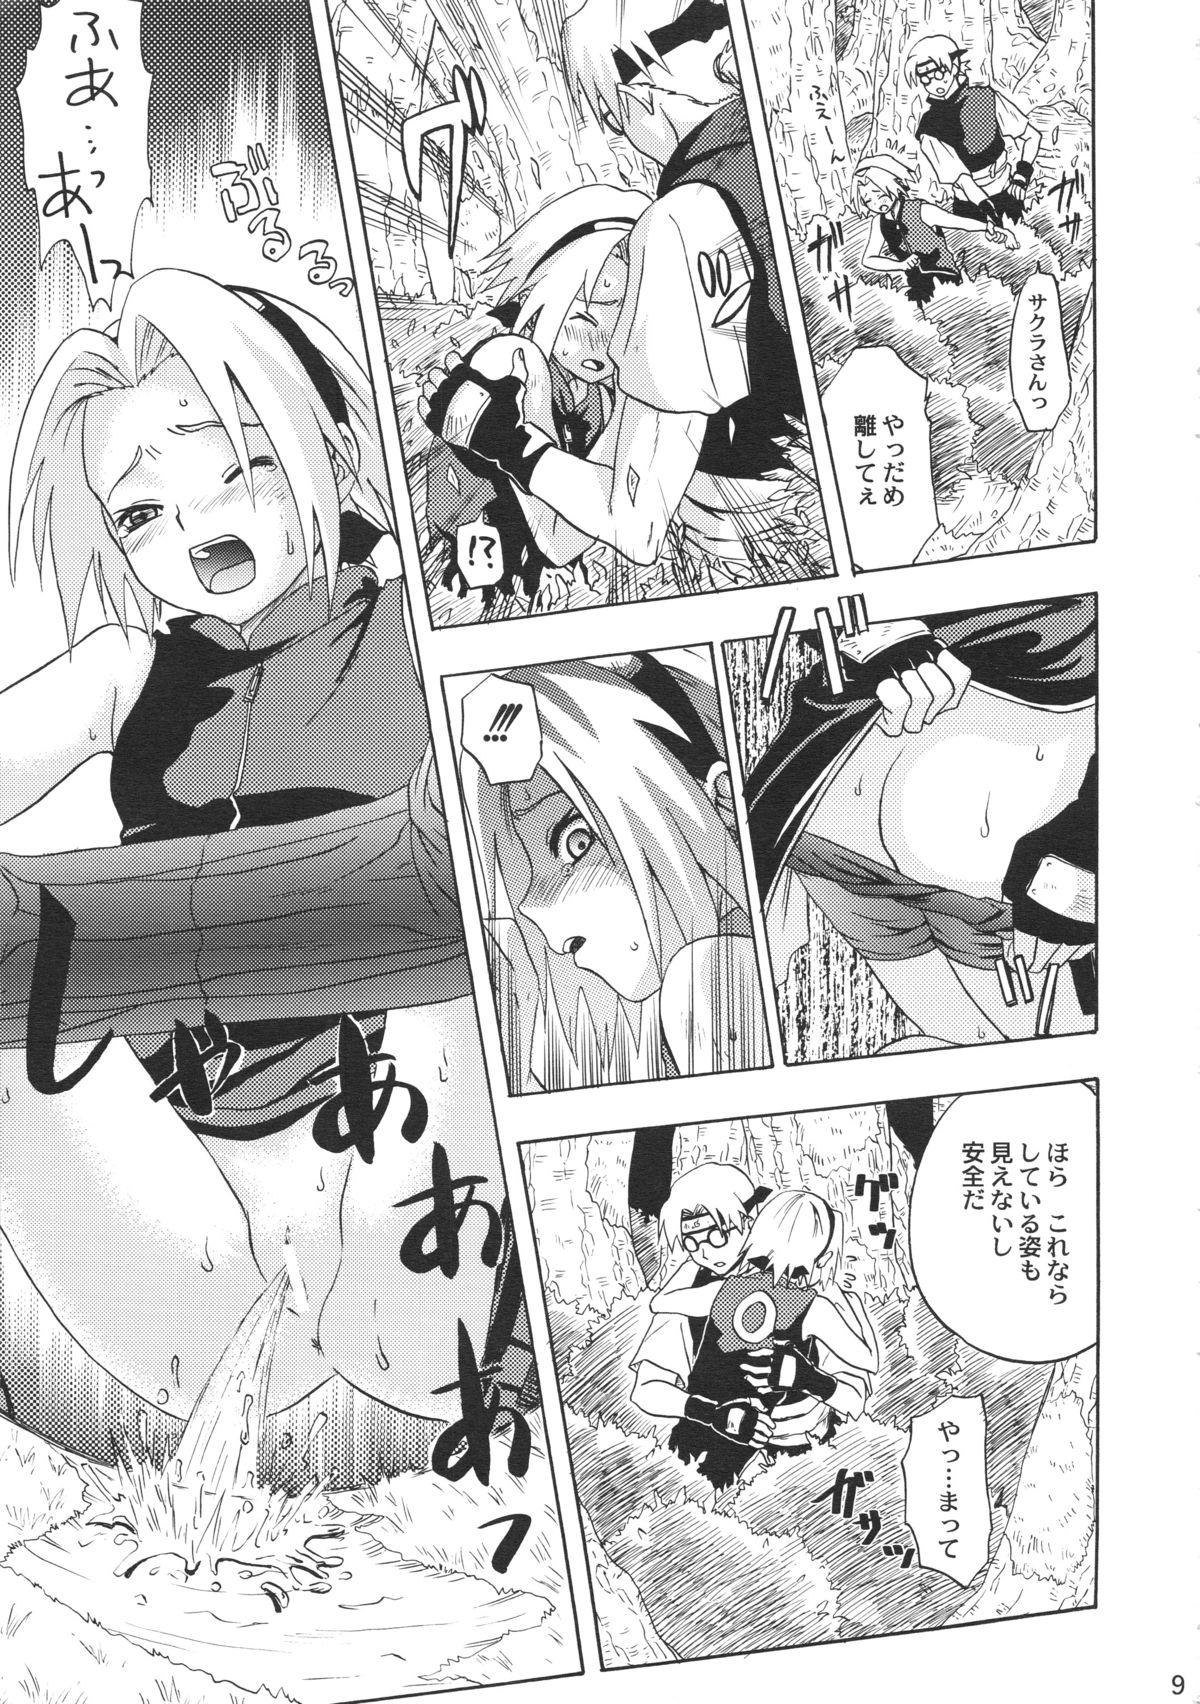 Pantyhose Haru Machibito - Naruto 18 Porn - Page 9